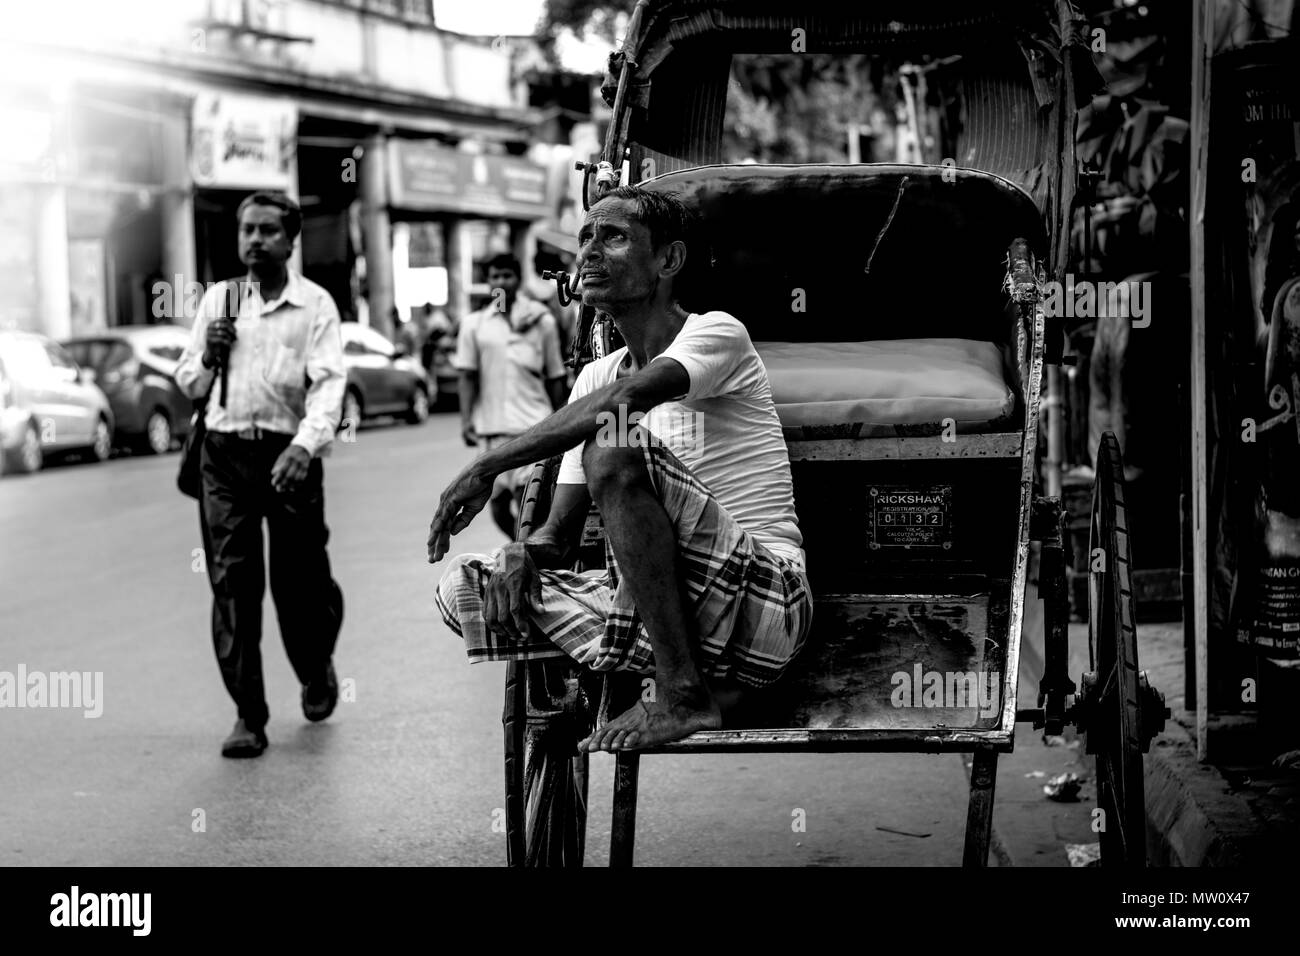 kolkata rickshawala,taxi, indian street photography,rickshaw,india,love,sad,happyness,happy,struggle,road,poor,homeless,lonely,lonelyness,city,sleep Stock Photo